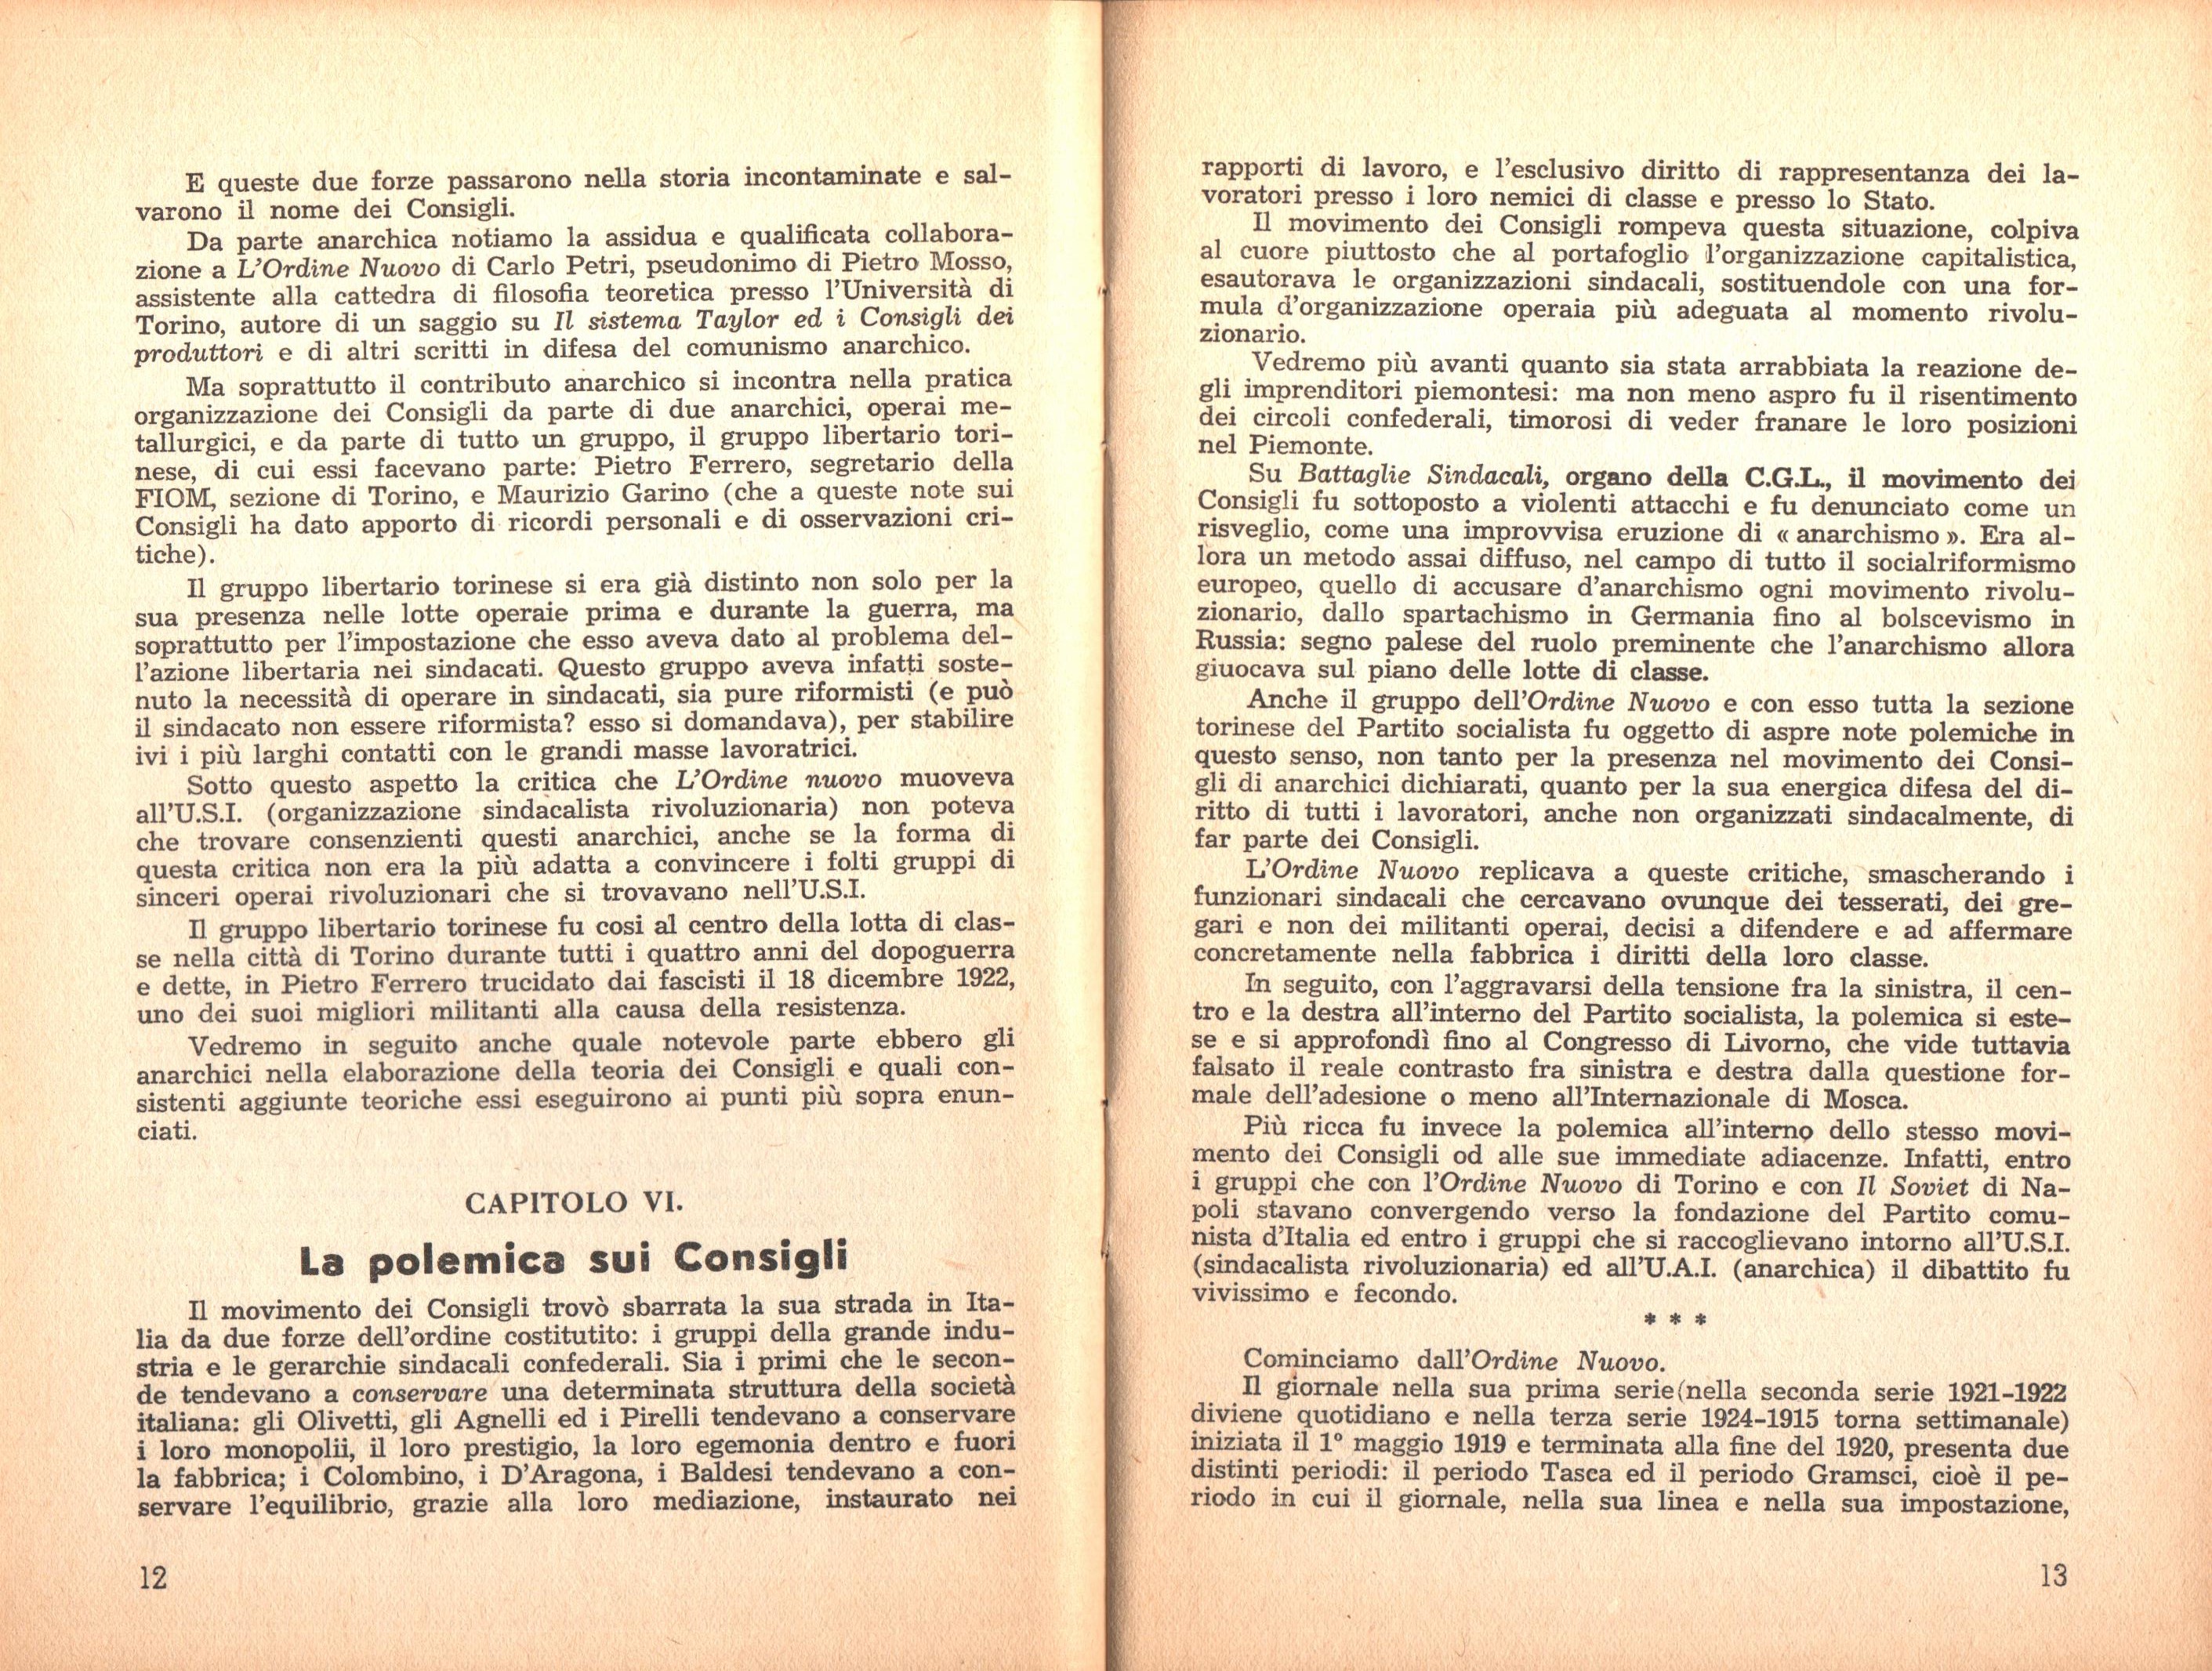 P. C. Masini, Anarchici e comunisti nel movimento dei Consigli a Torino - pag. 8